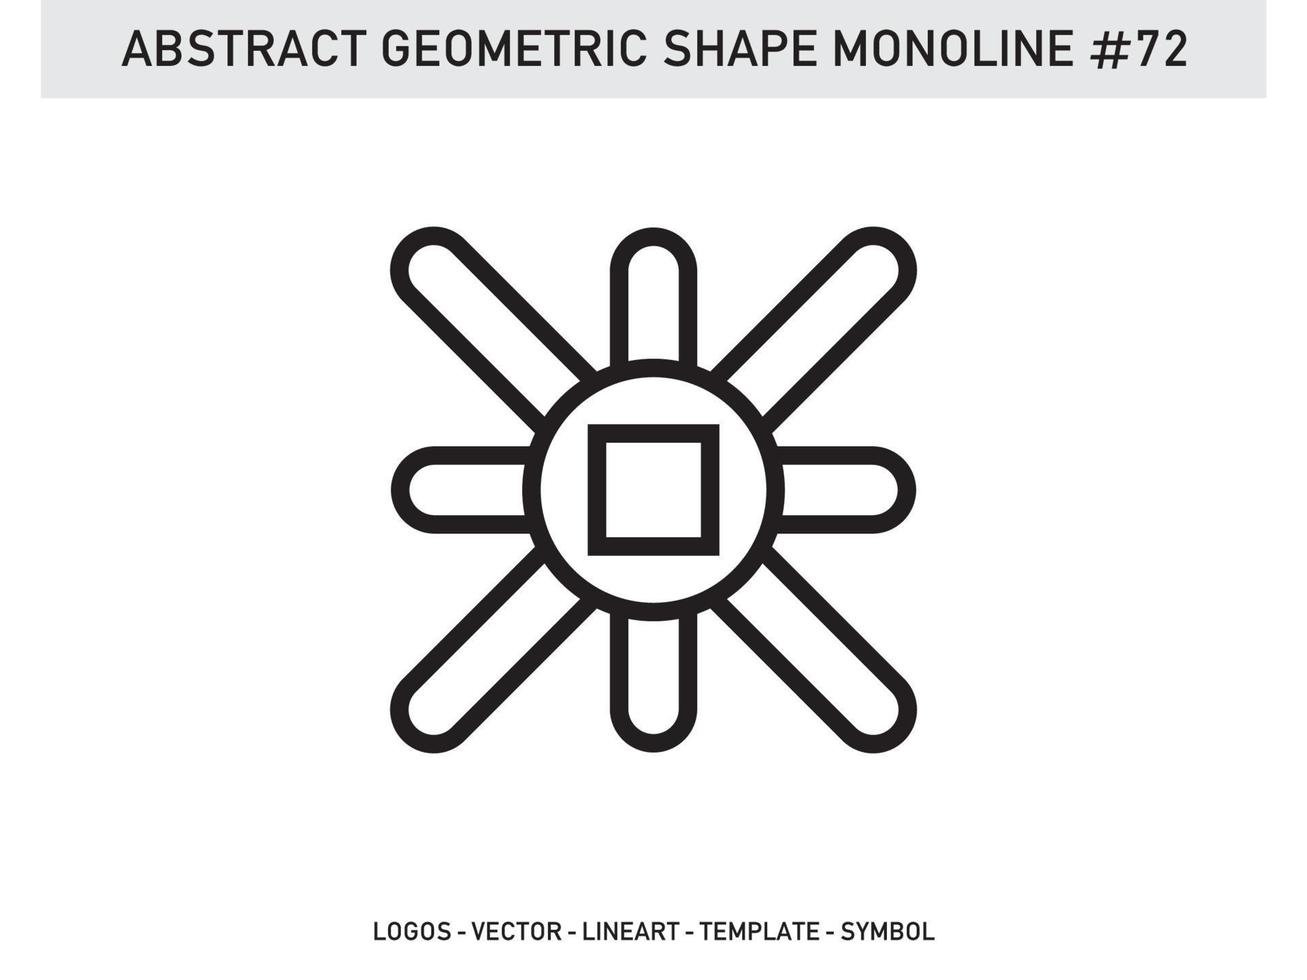 abstracto geométrico monoline lineart línea vector forma gratis